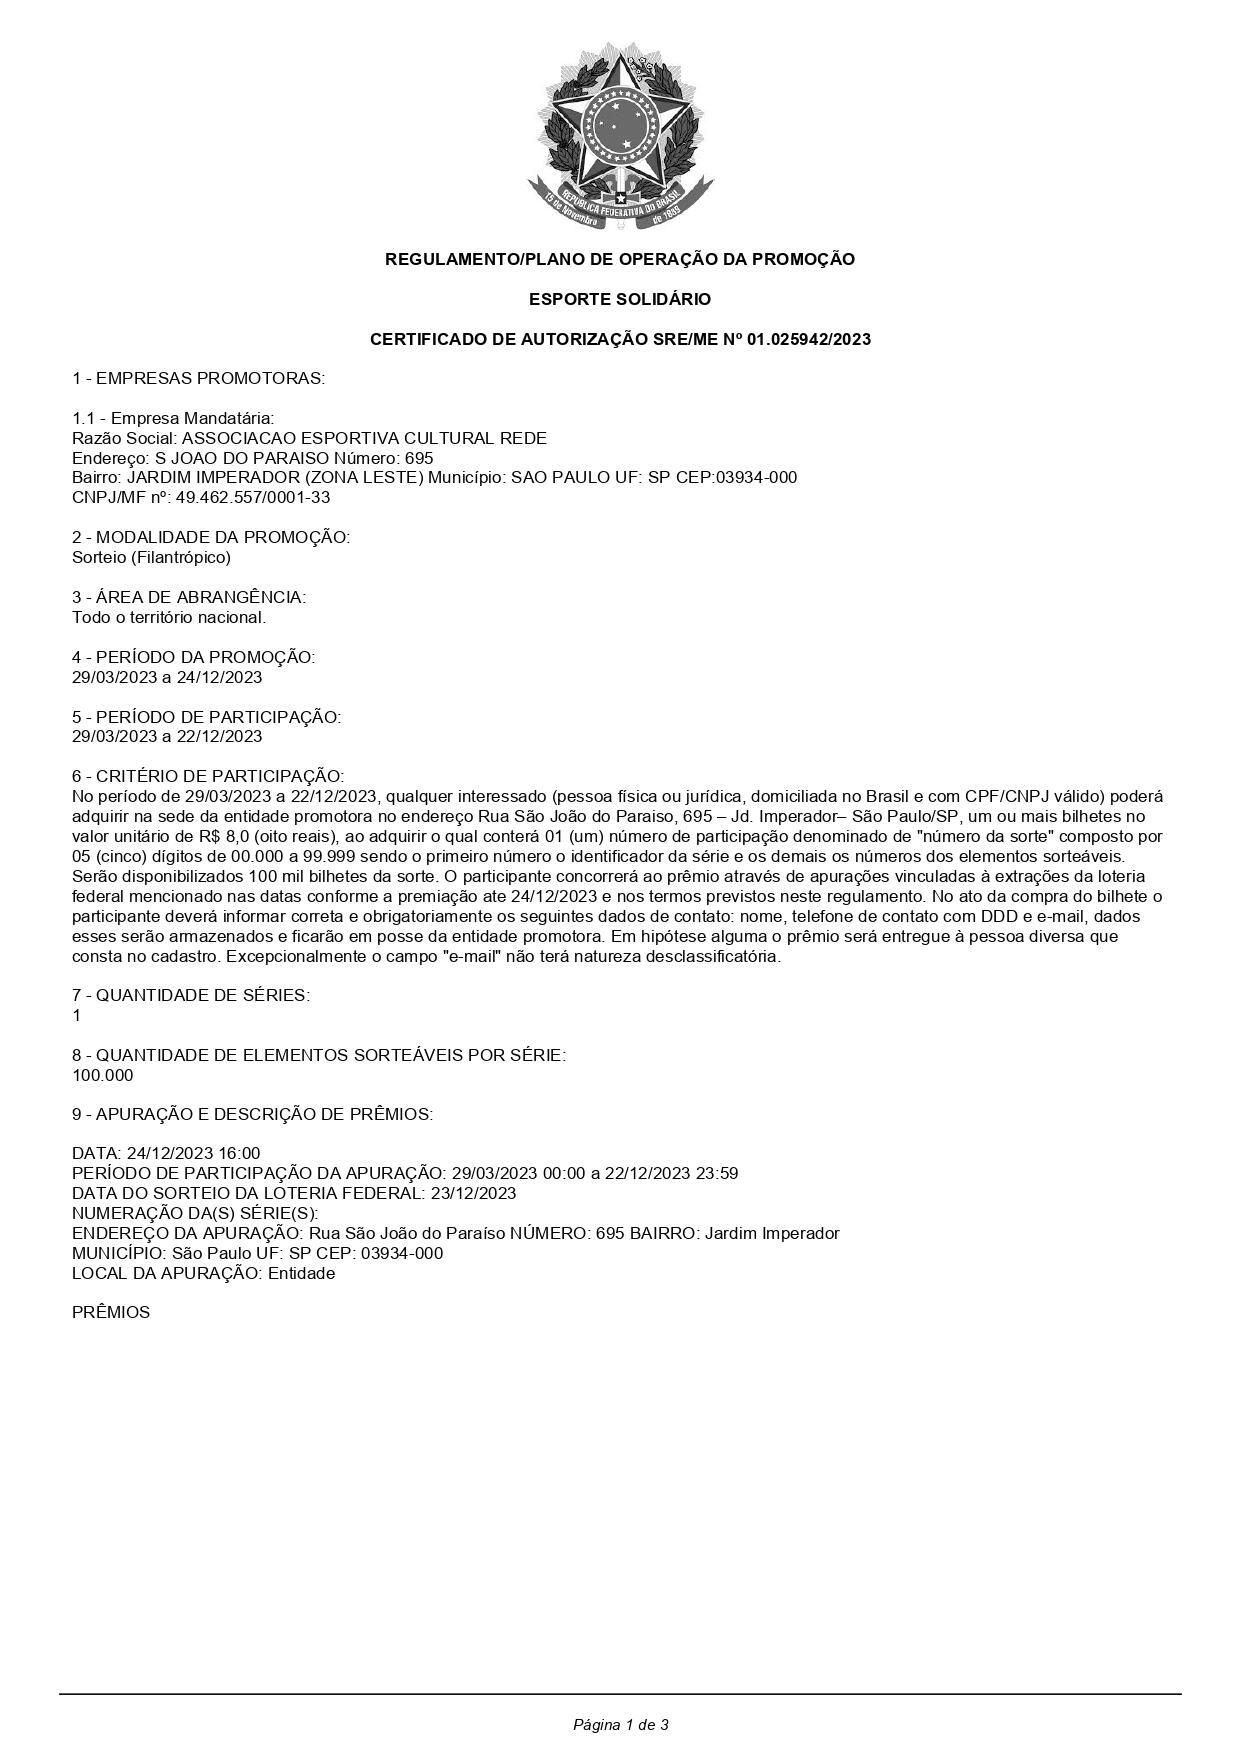 Imagem mostra a primeira página do regulamento de uma promoção realizada por uma associação de São Paulo, cujas informações são incompatíveis com os sorteios realizados por Janis.